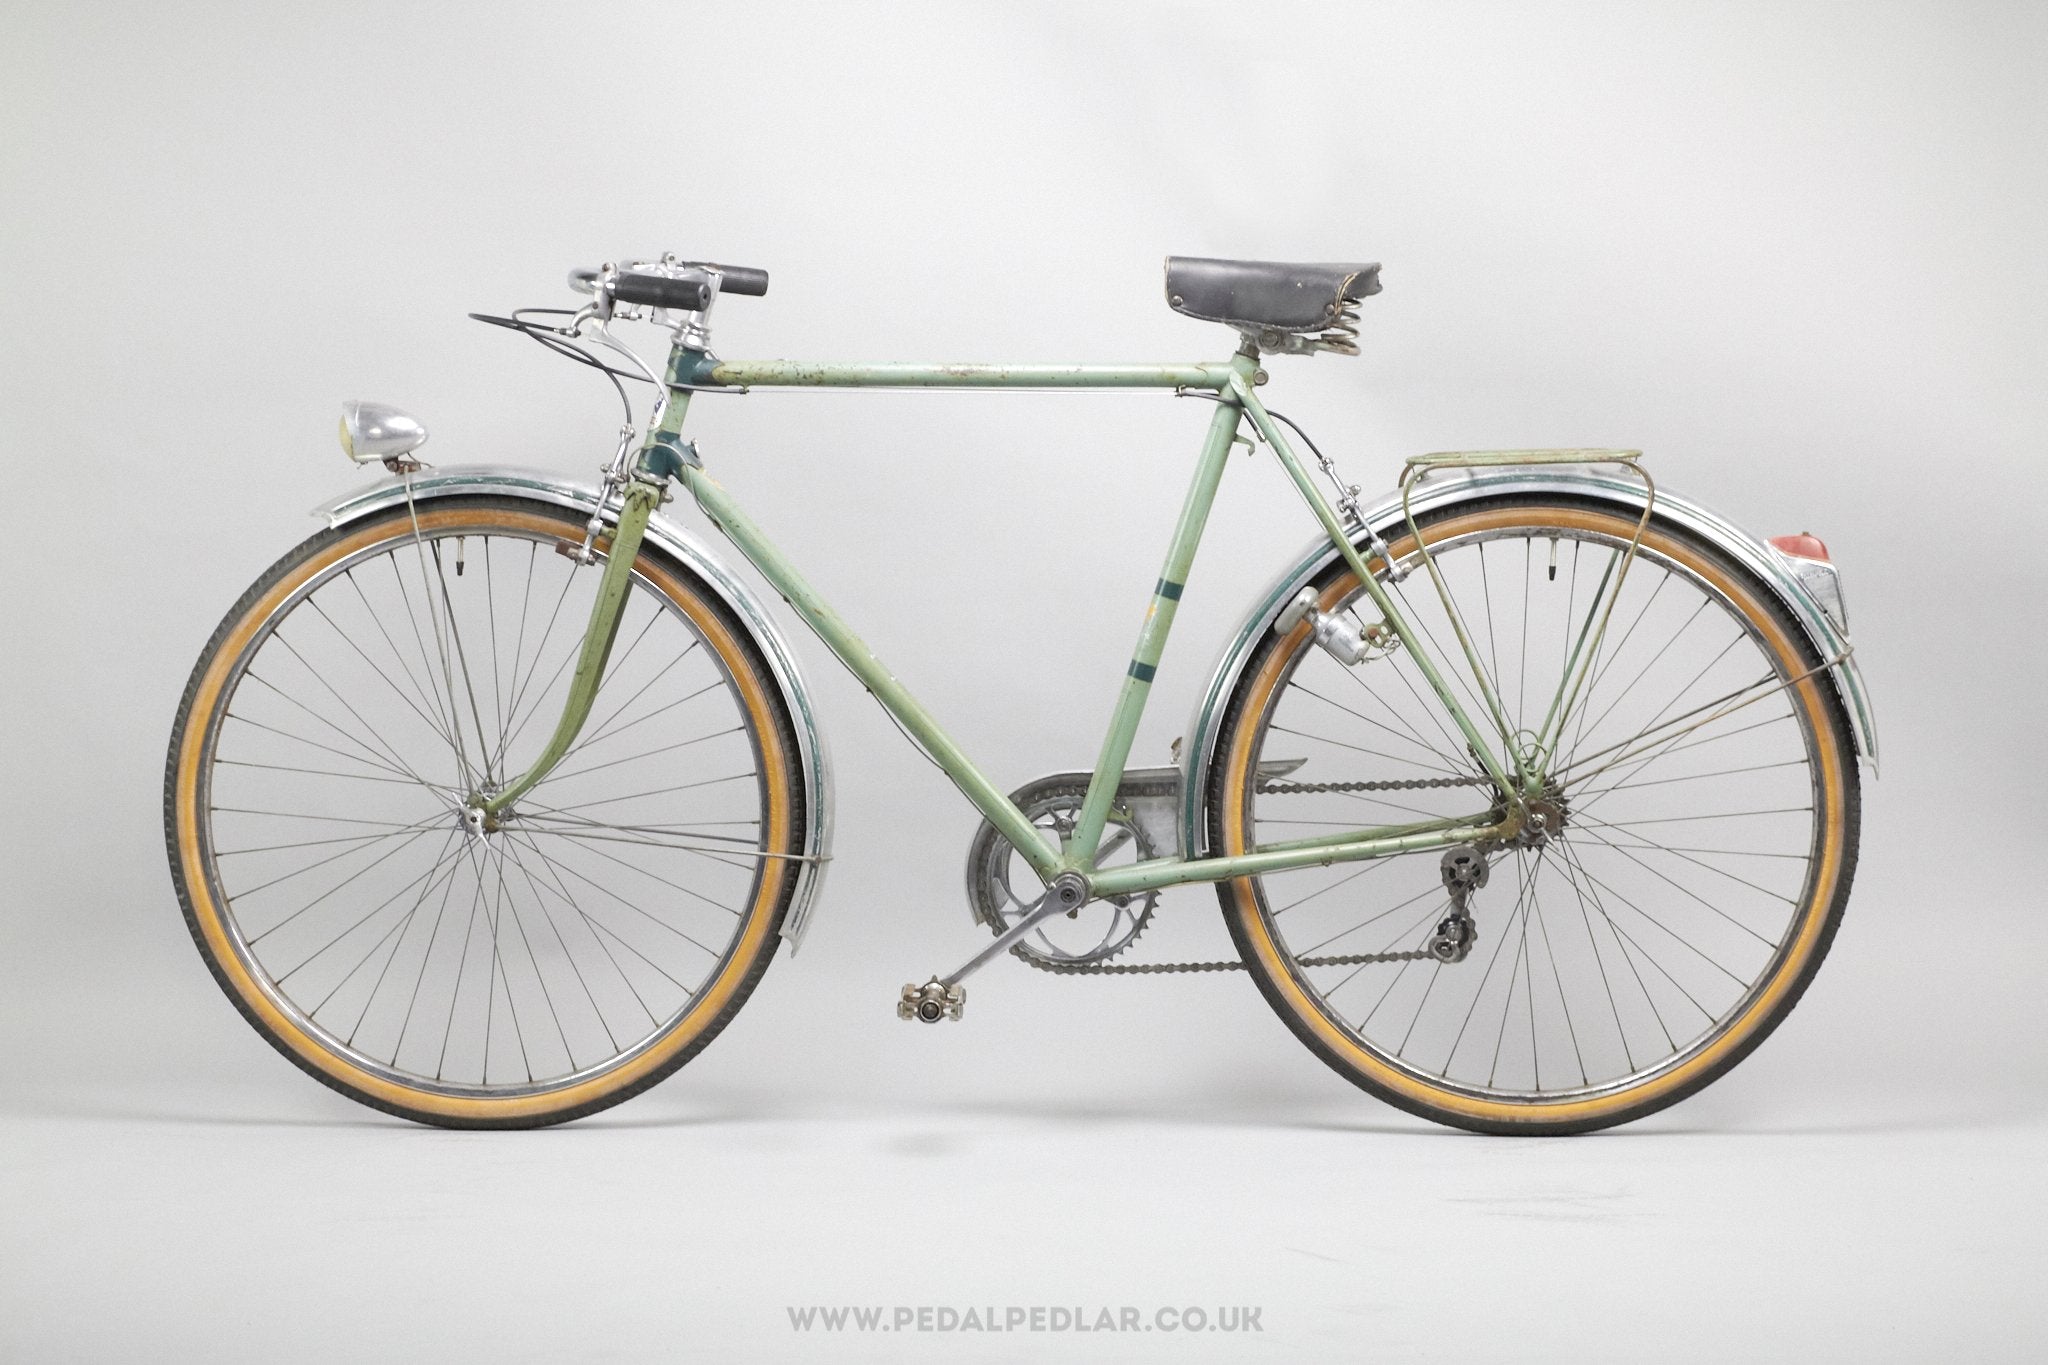 peugeot bicycle vintage